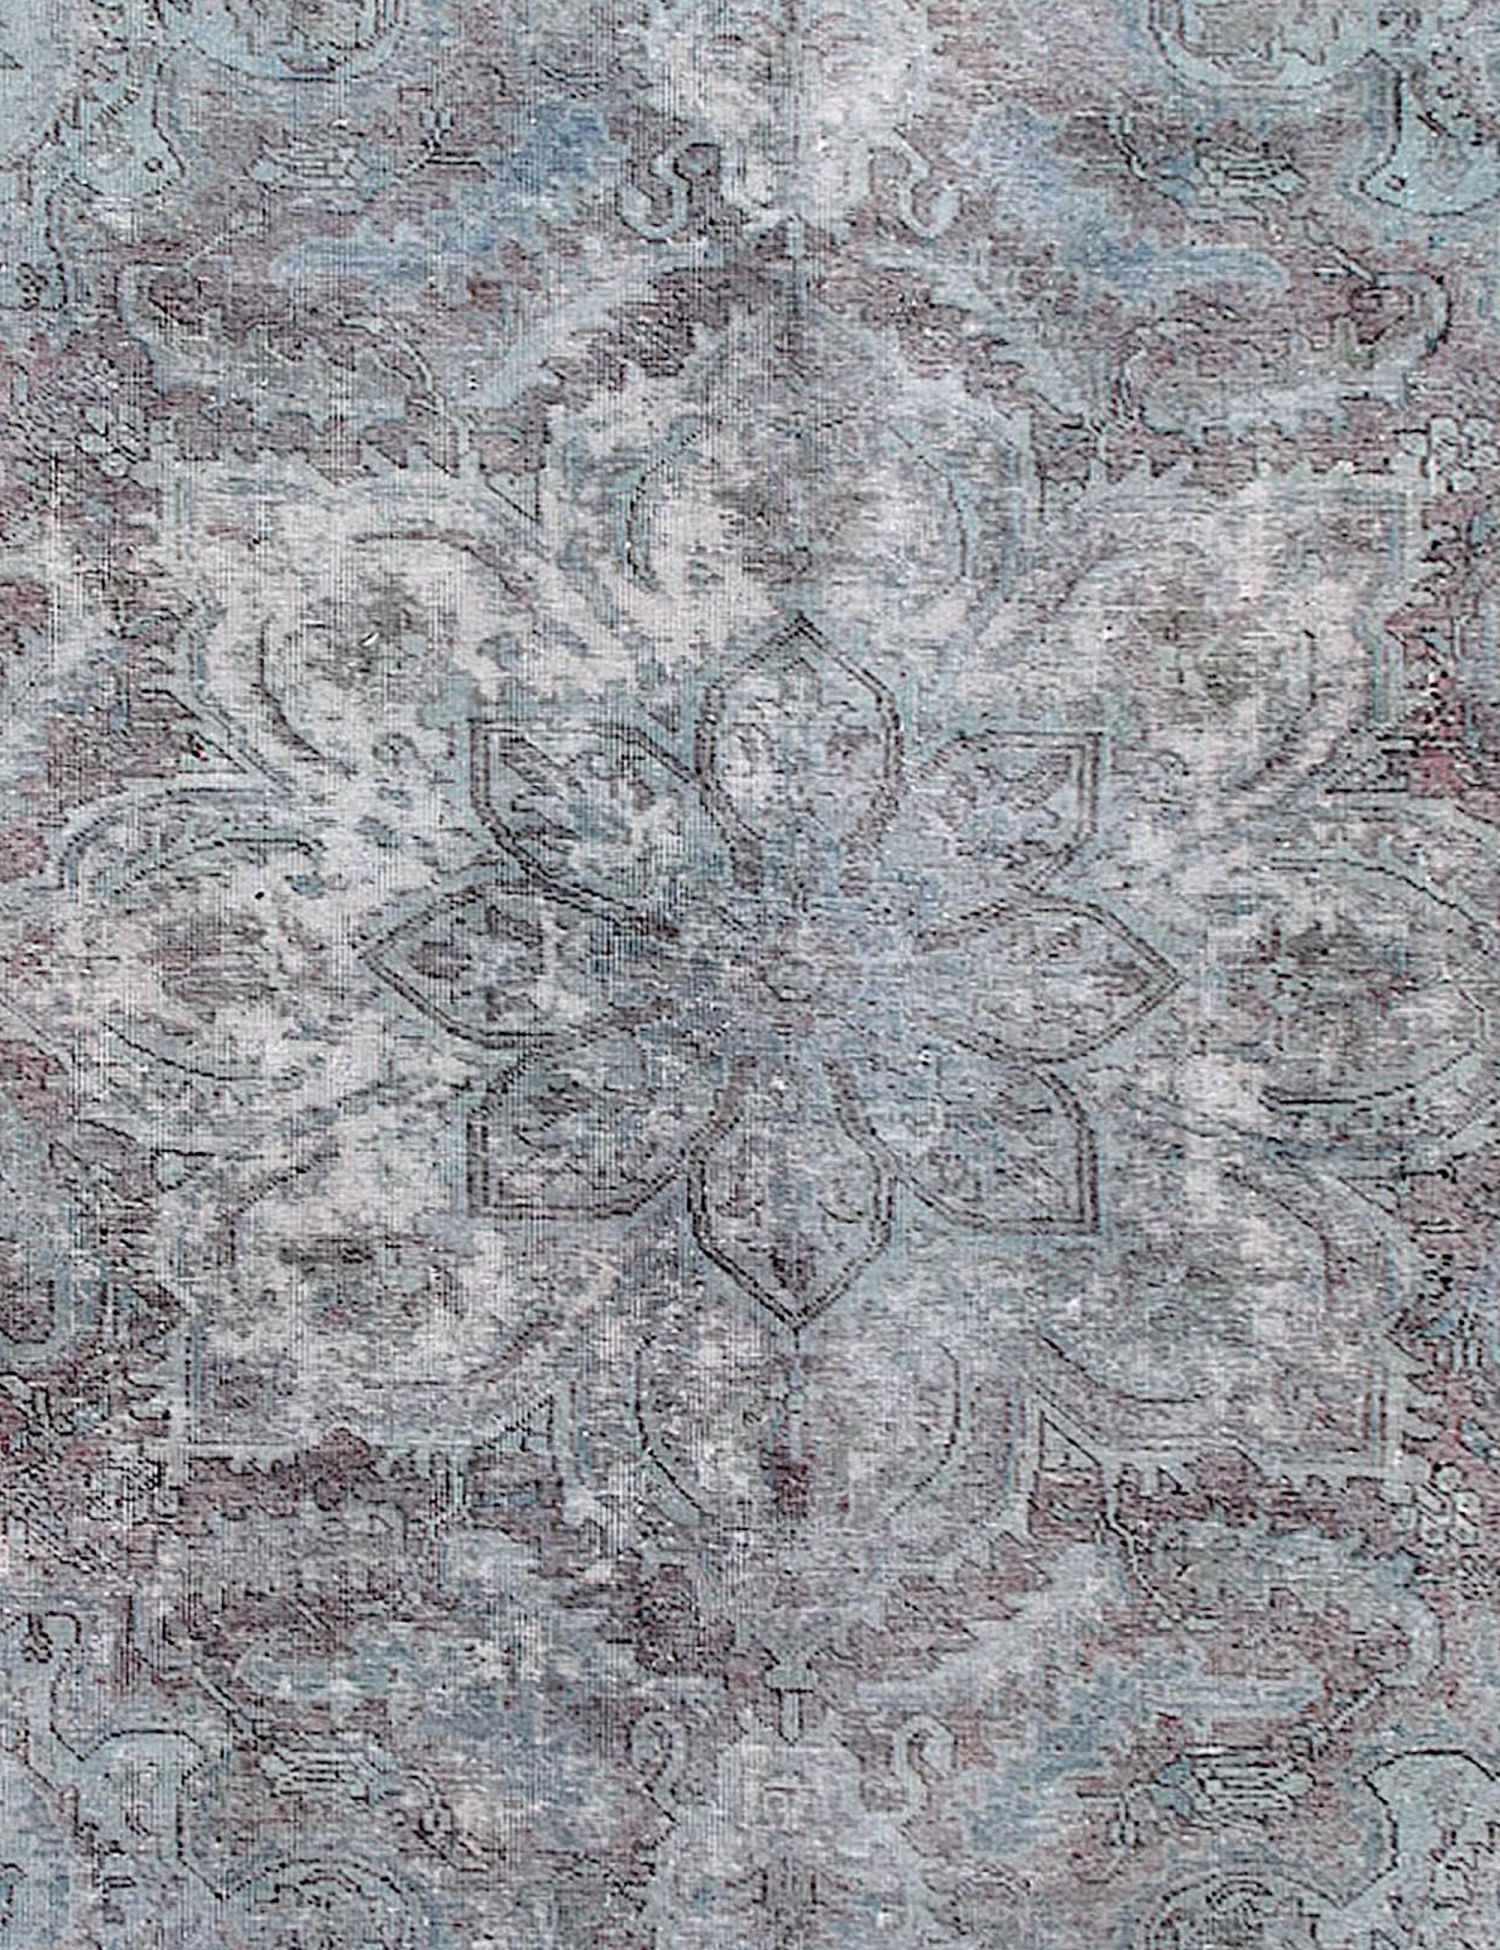 Persischer Vintage Teppich  türkis <br/>235 x 235 cm